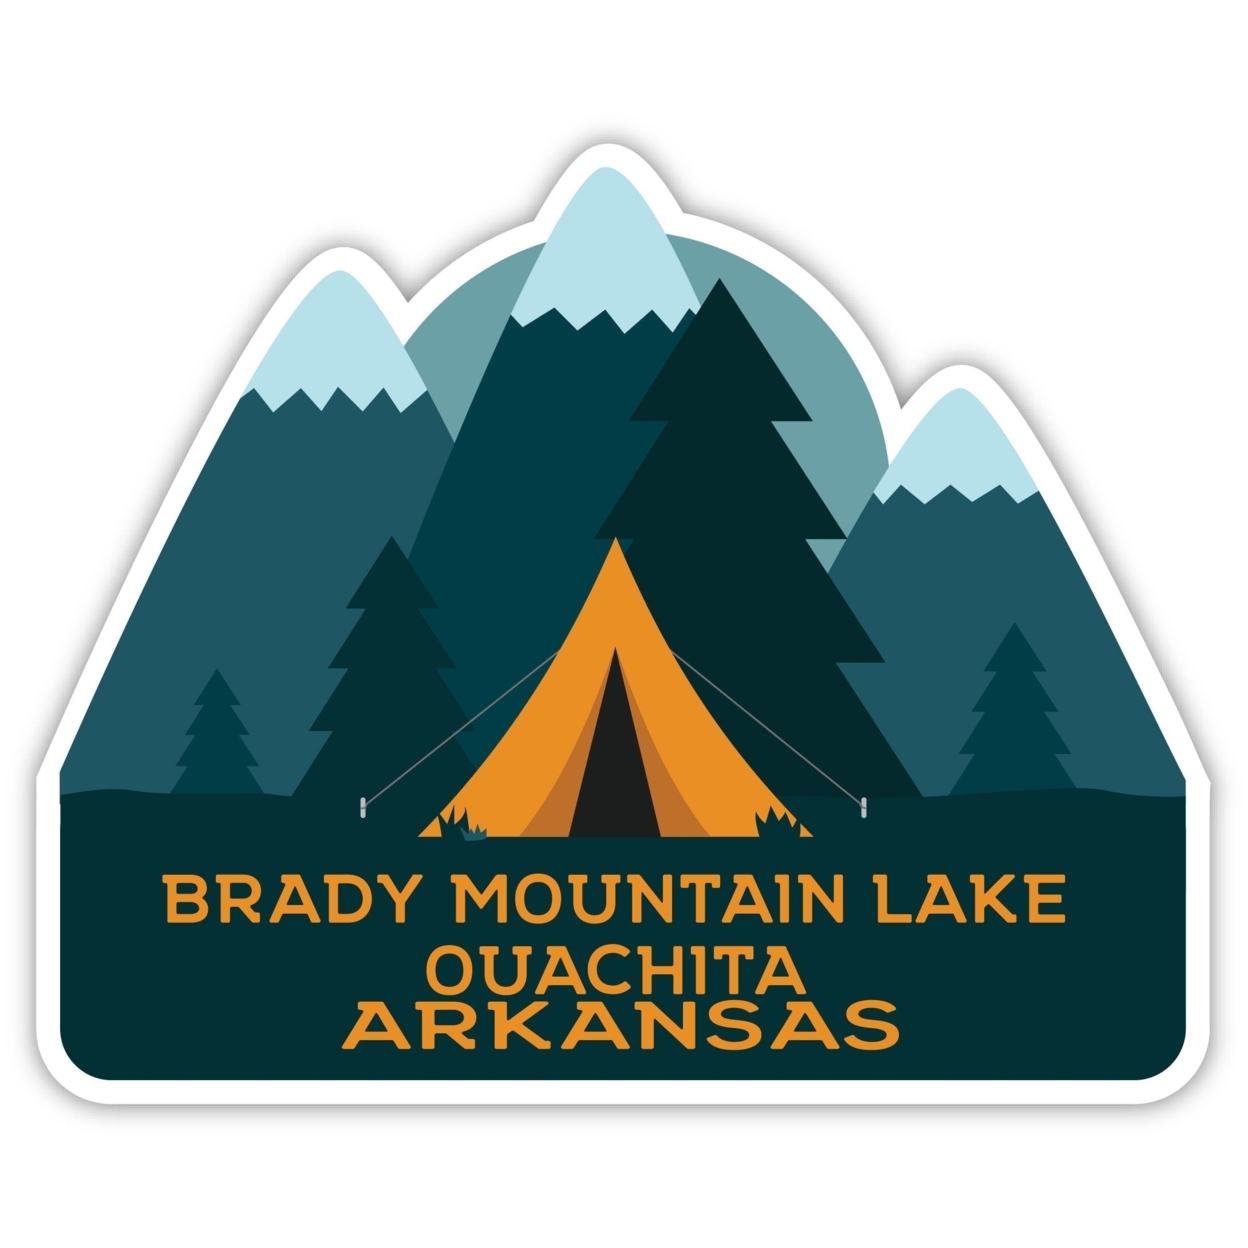 Brady Mountain Lake Ouachita Arkansas Souvenir Decorative Stickers (Choose Theme And Size) - 4-Pack, 8-Inch, Bear